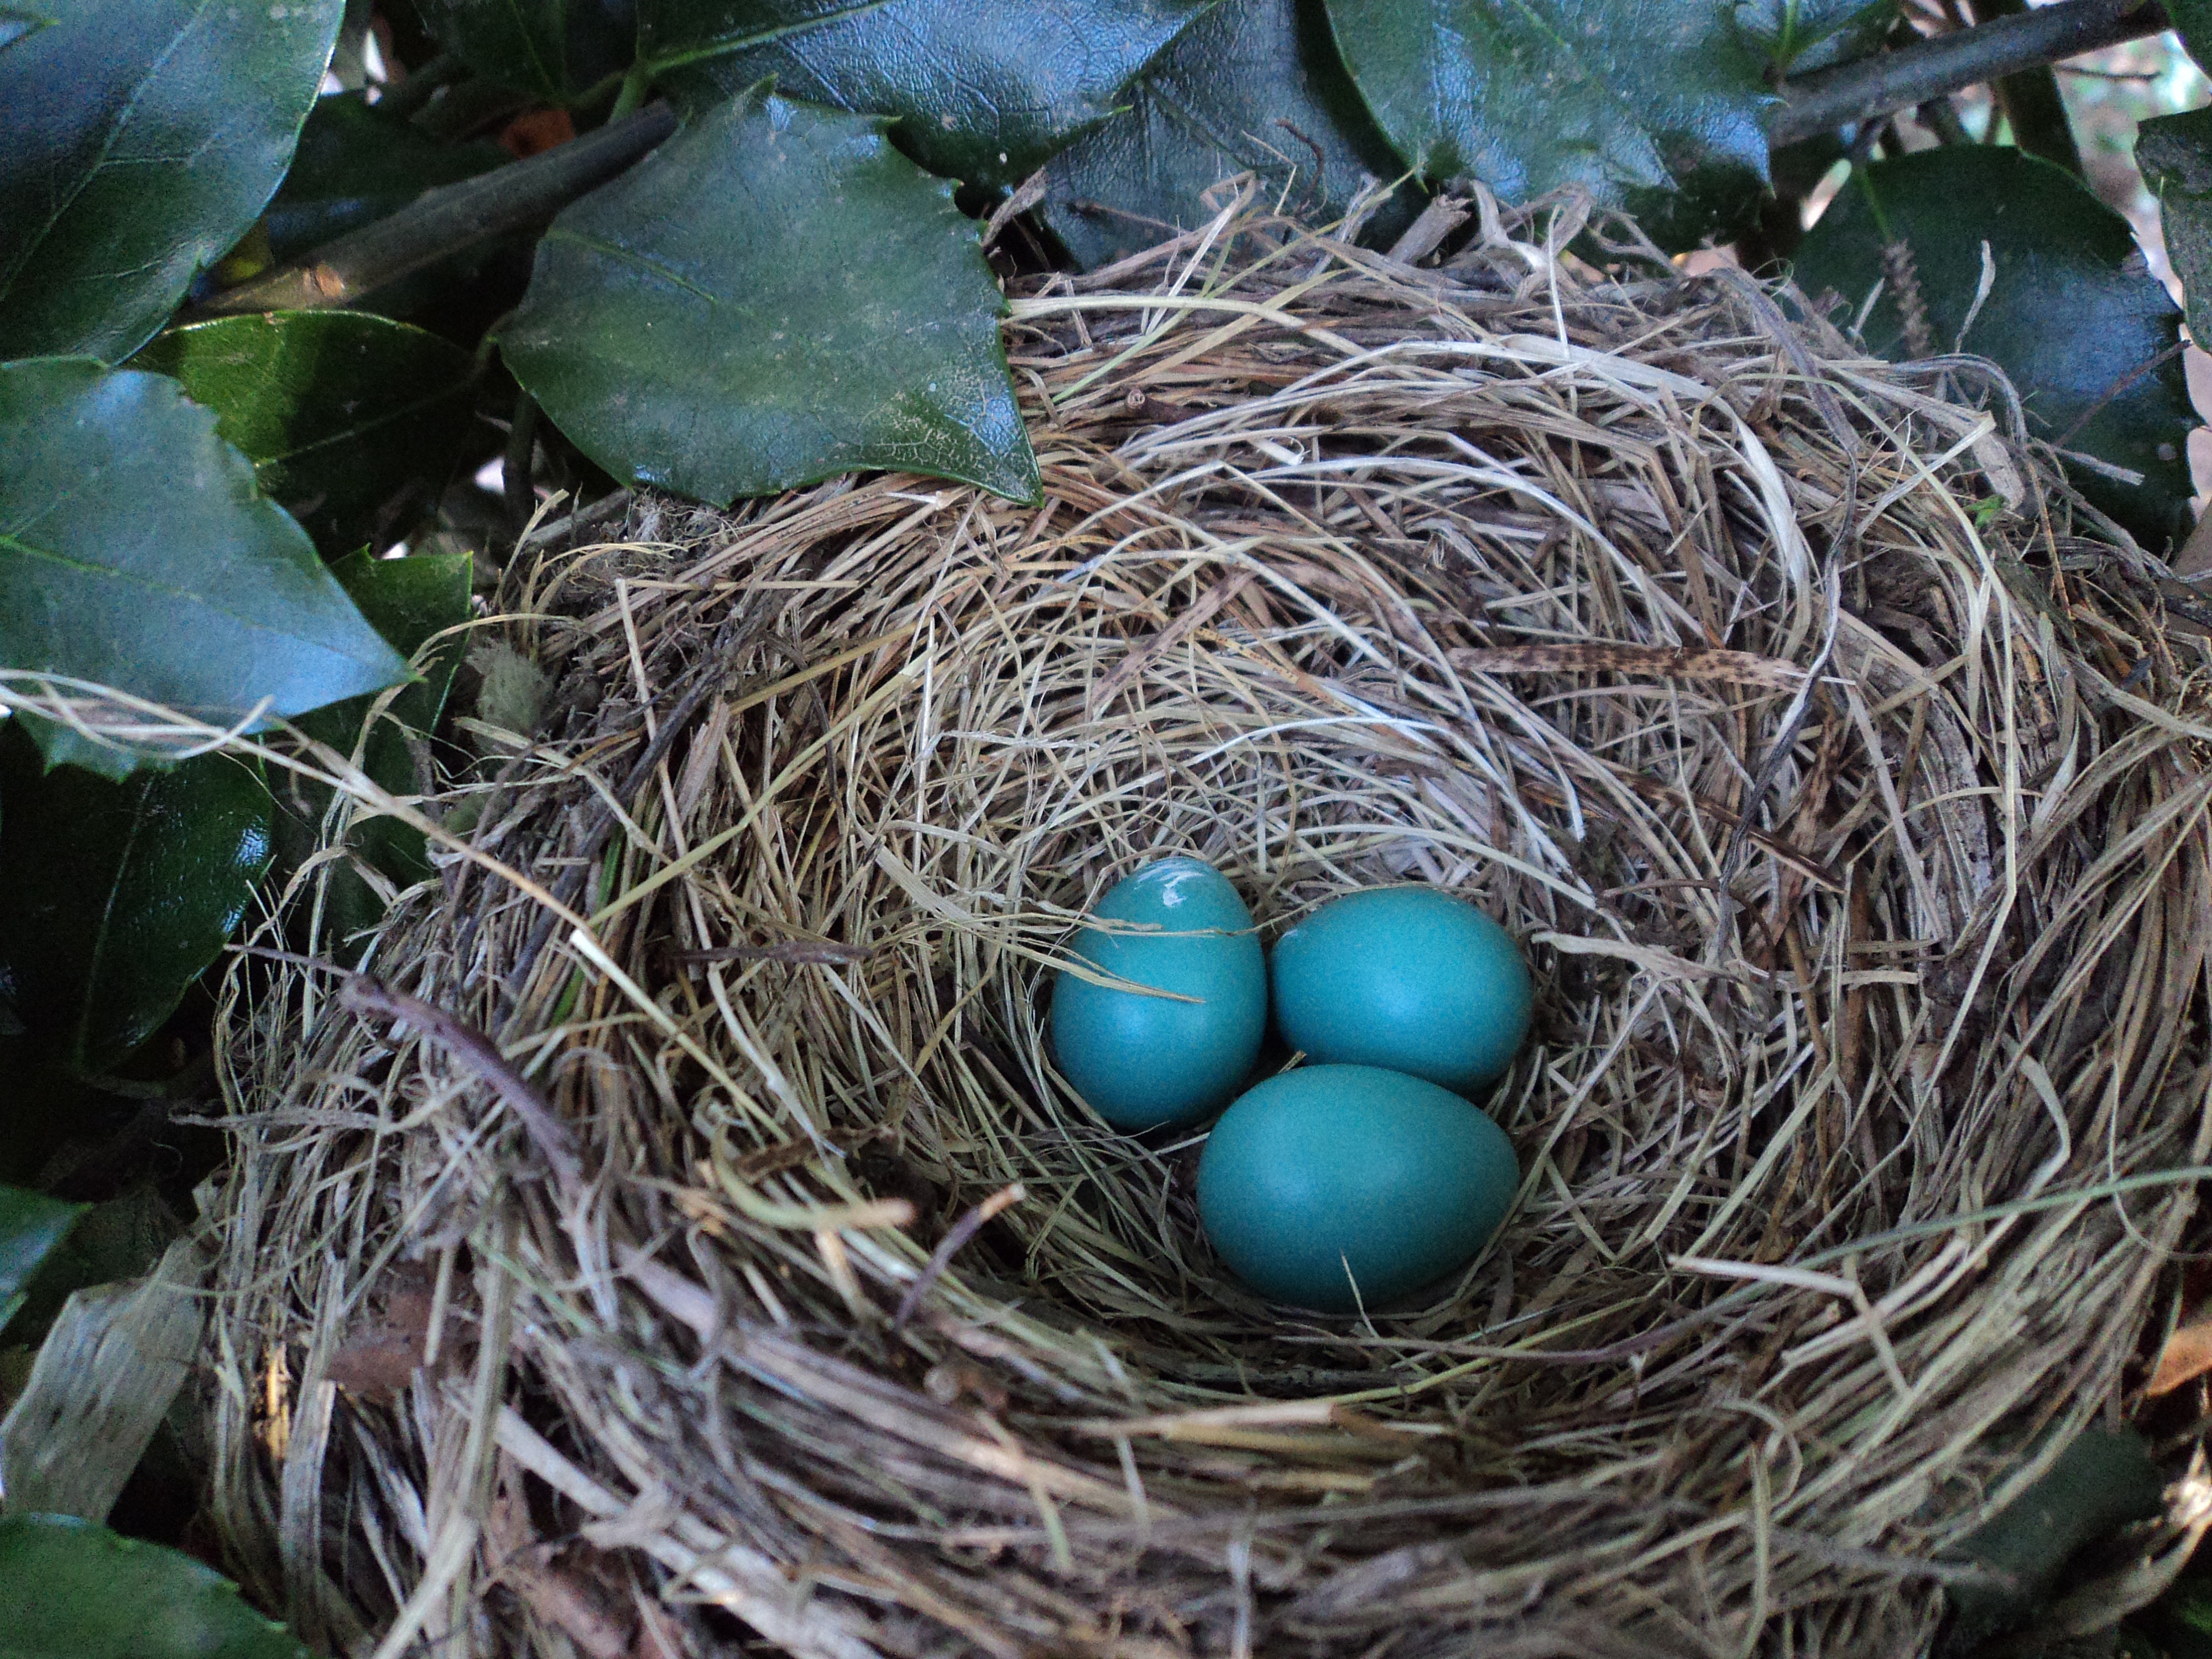 Определить гнезда птиц. Дрозд высиживает яйца. Яйца дрозда дерябы. Голубые яйца. Голубые птичьи яйца.